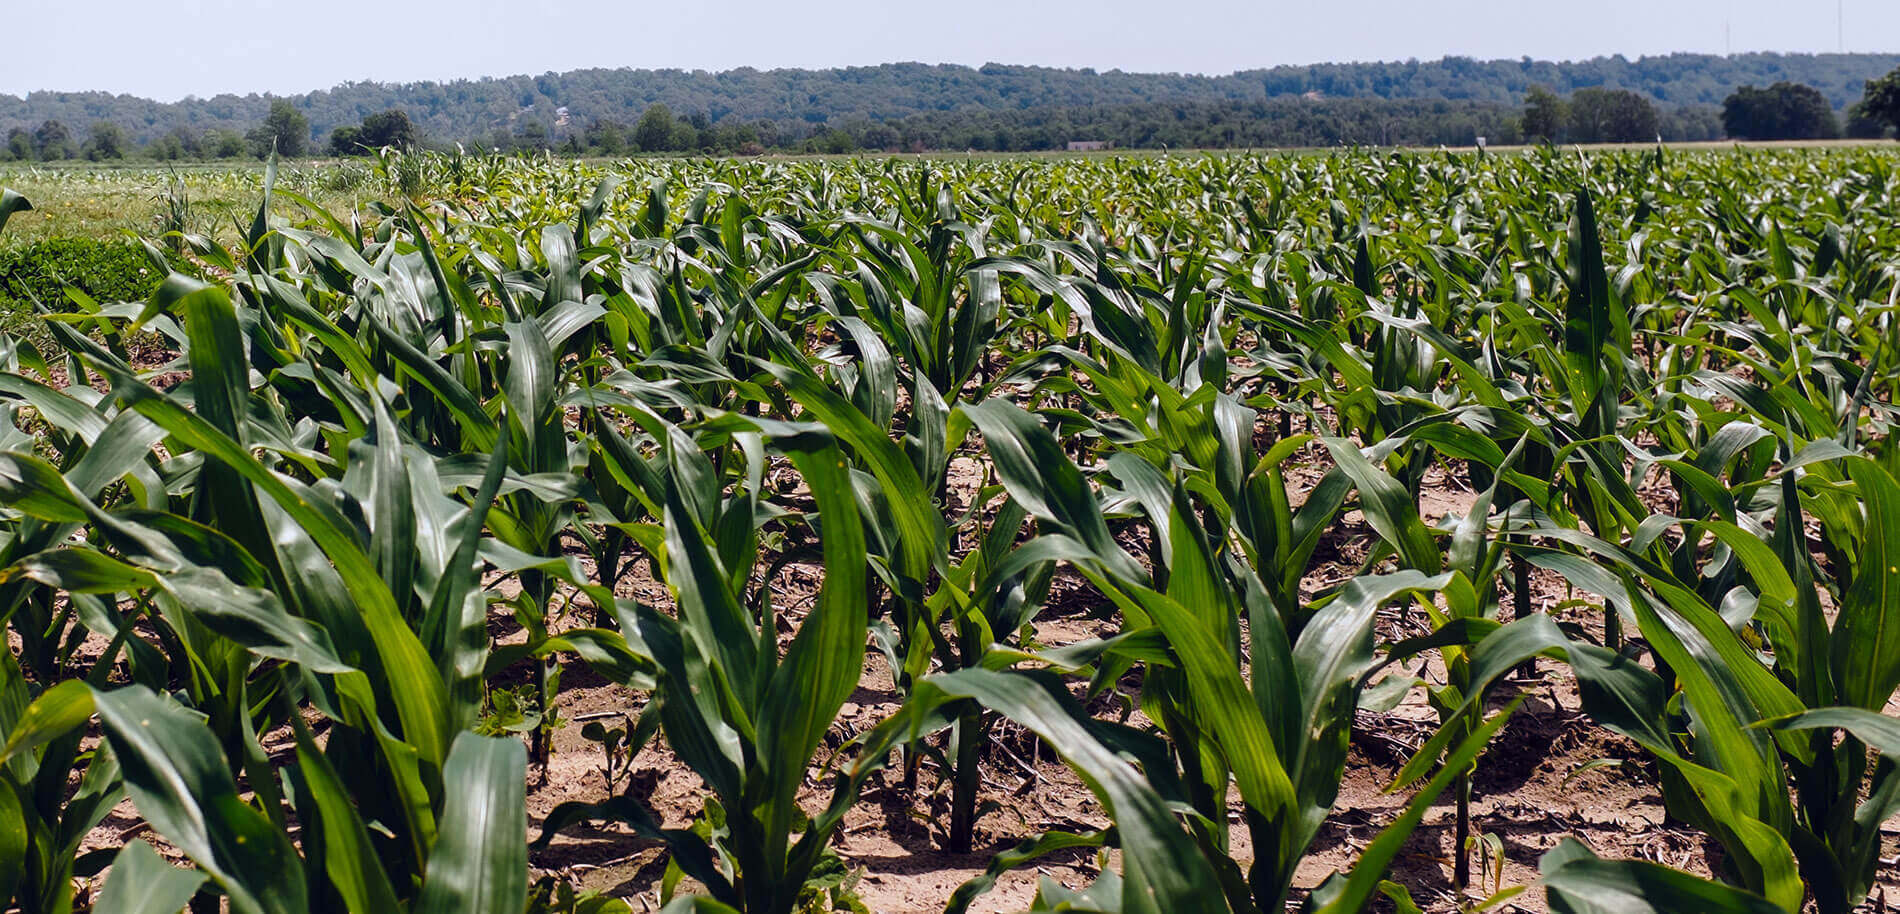 Up close shot of Corn in a field.